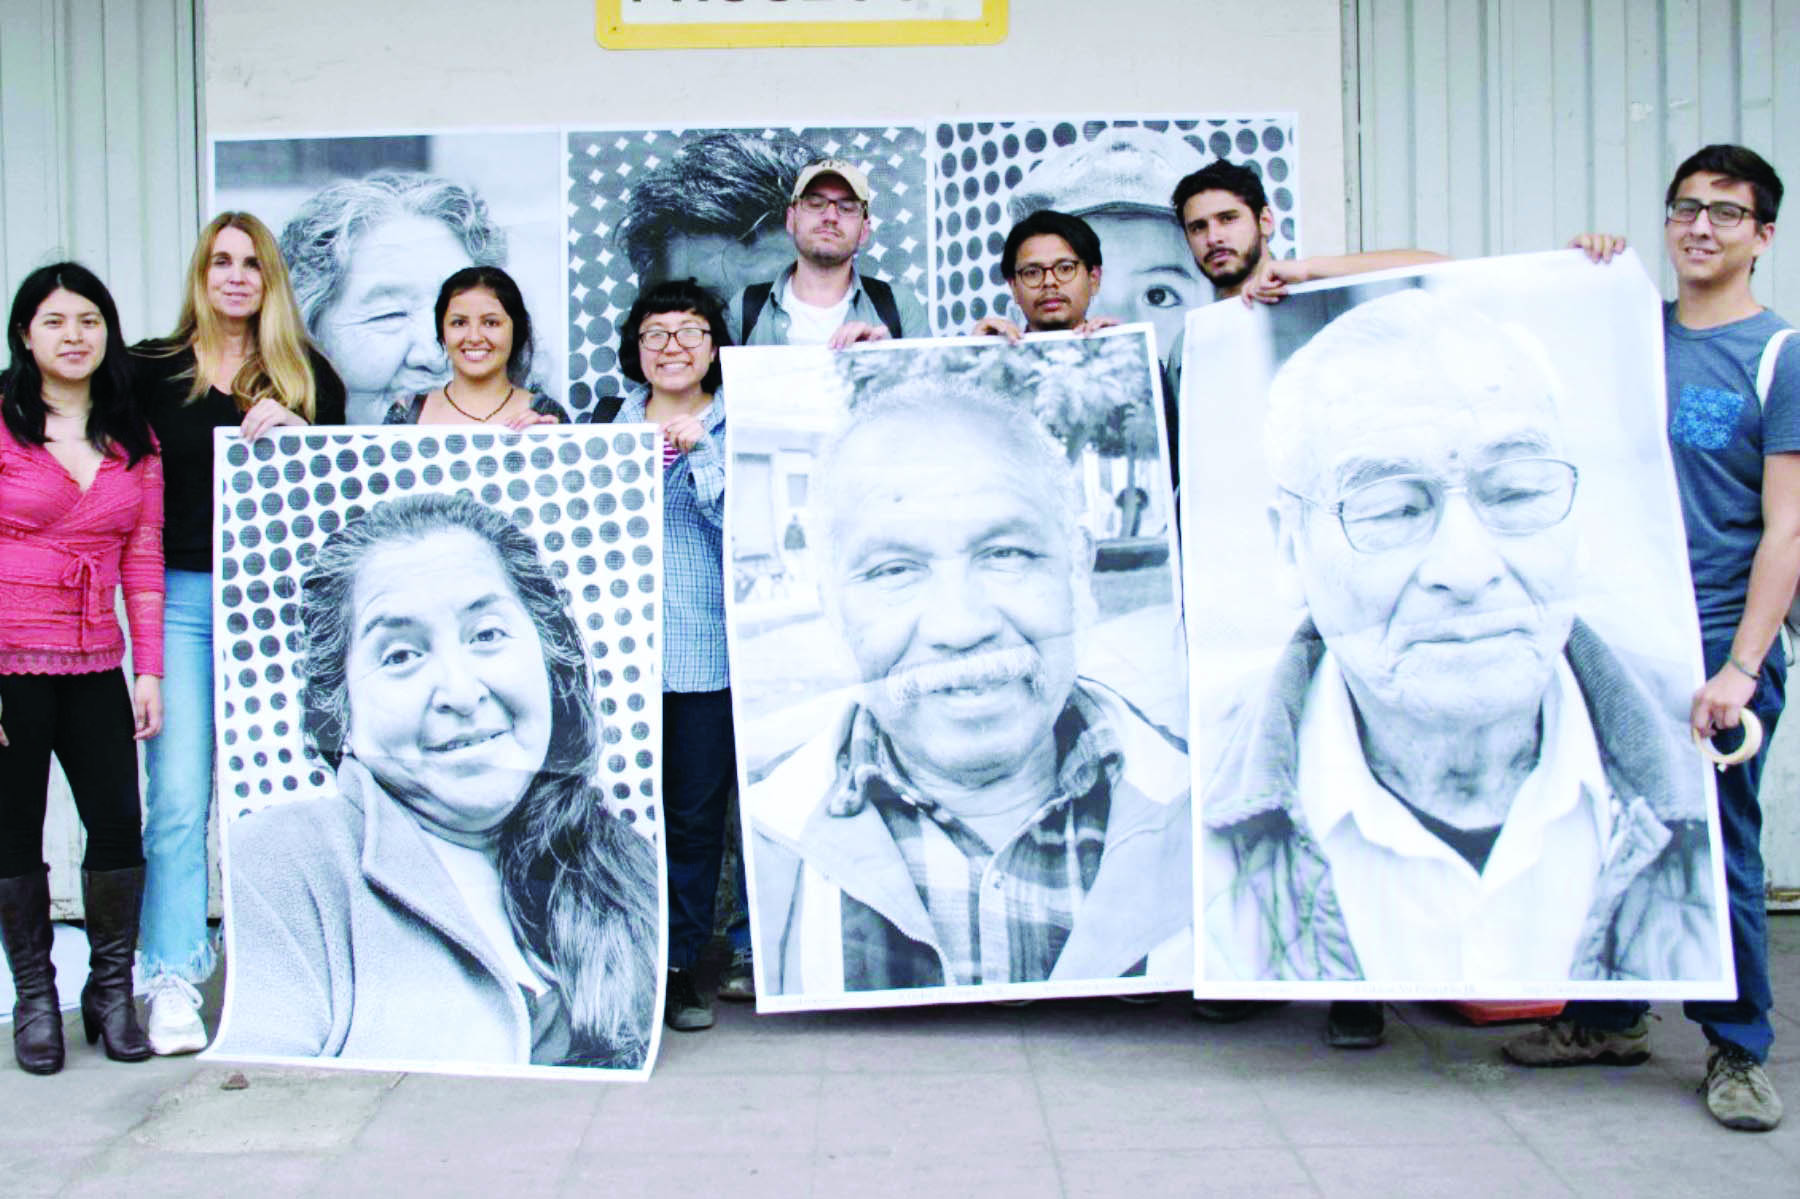 Promueven identidad de habitantes de Barrios Altos mediante retratos